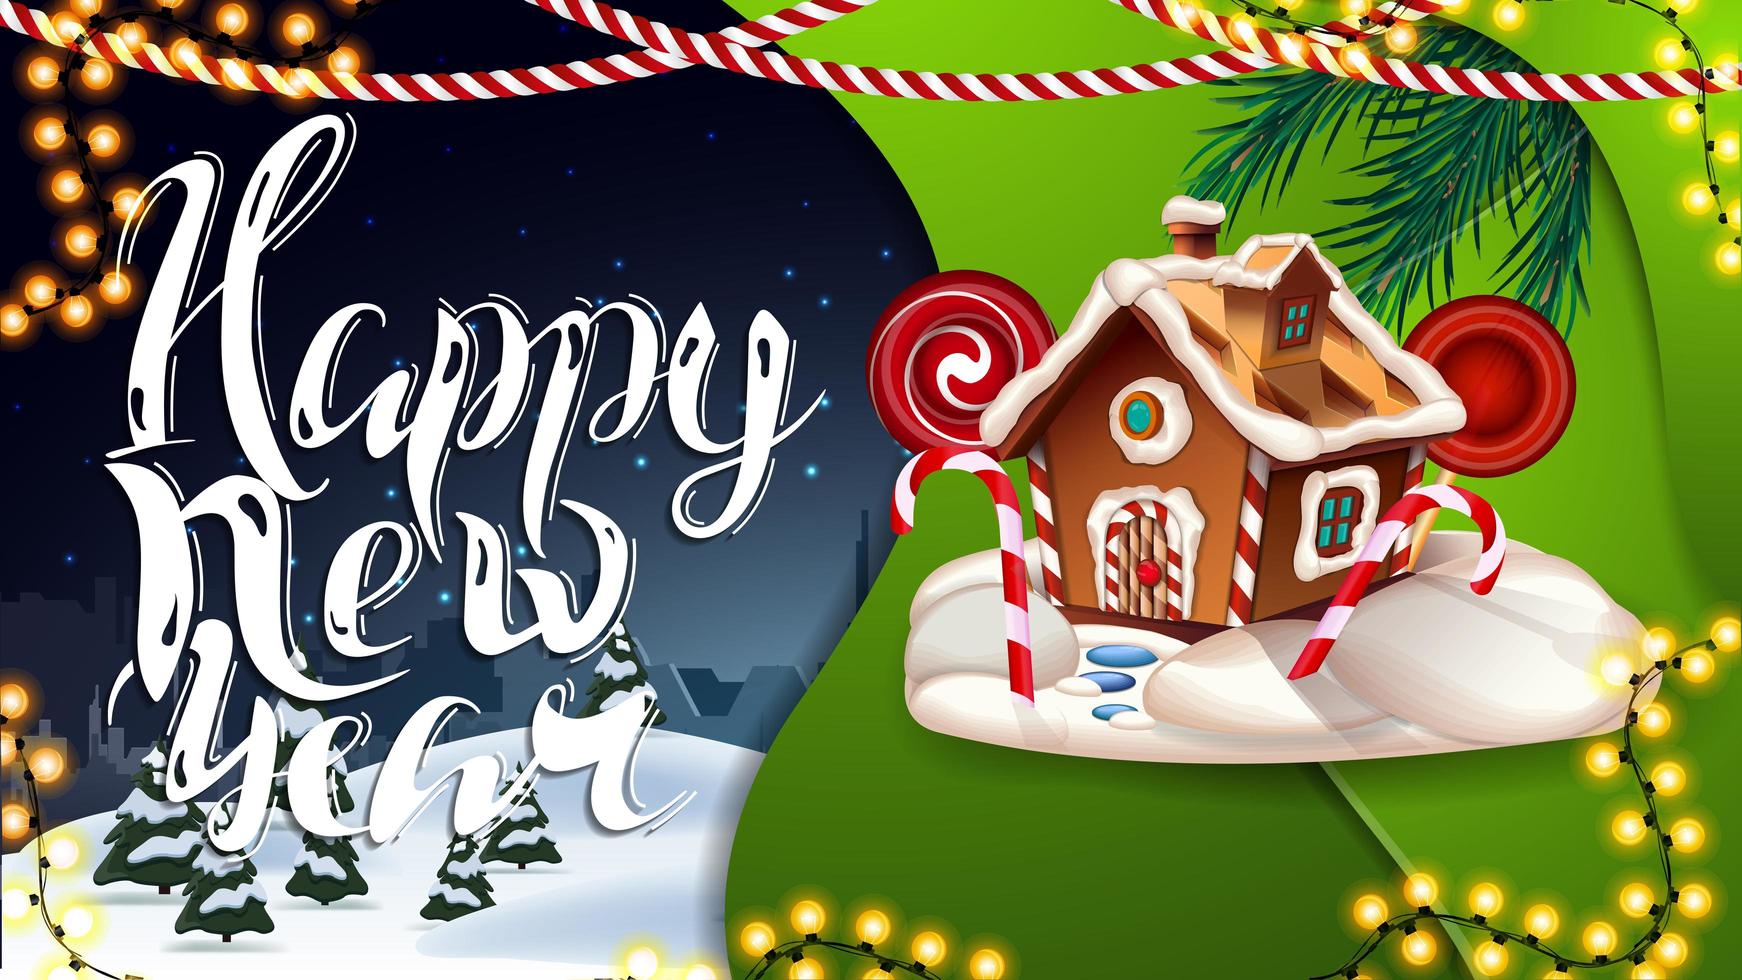 gott nytt år, blått och grönt vykort med girlander, vinterlandskap och pepparkakshus för jul vektor